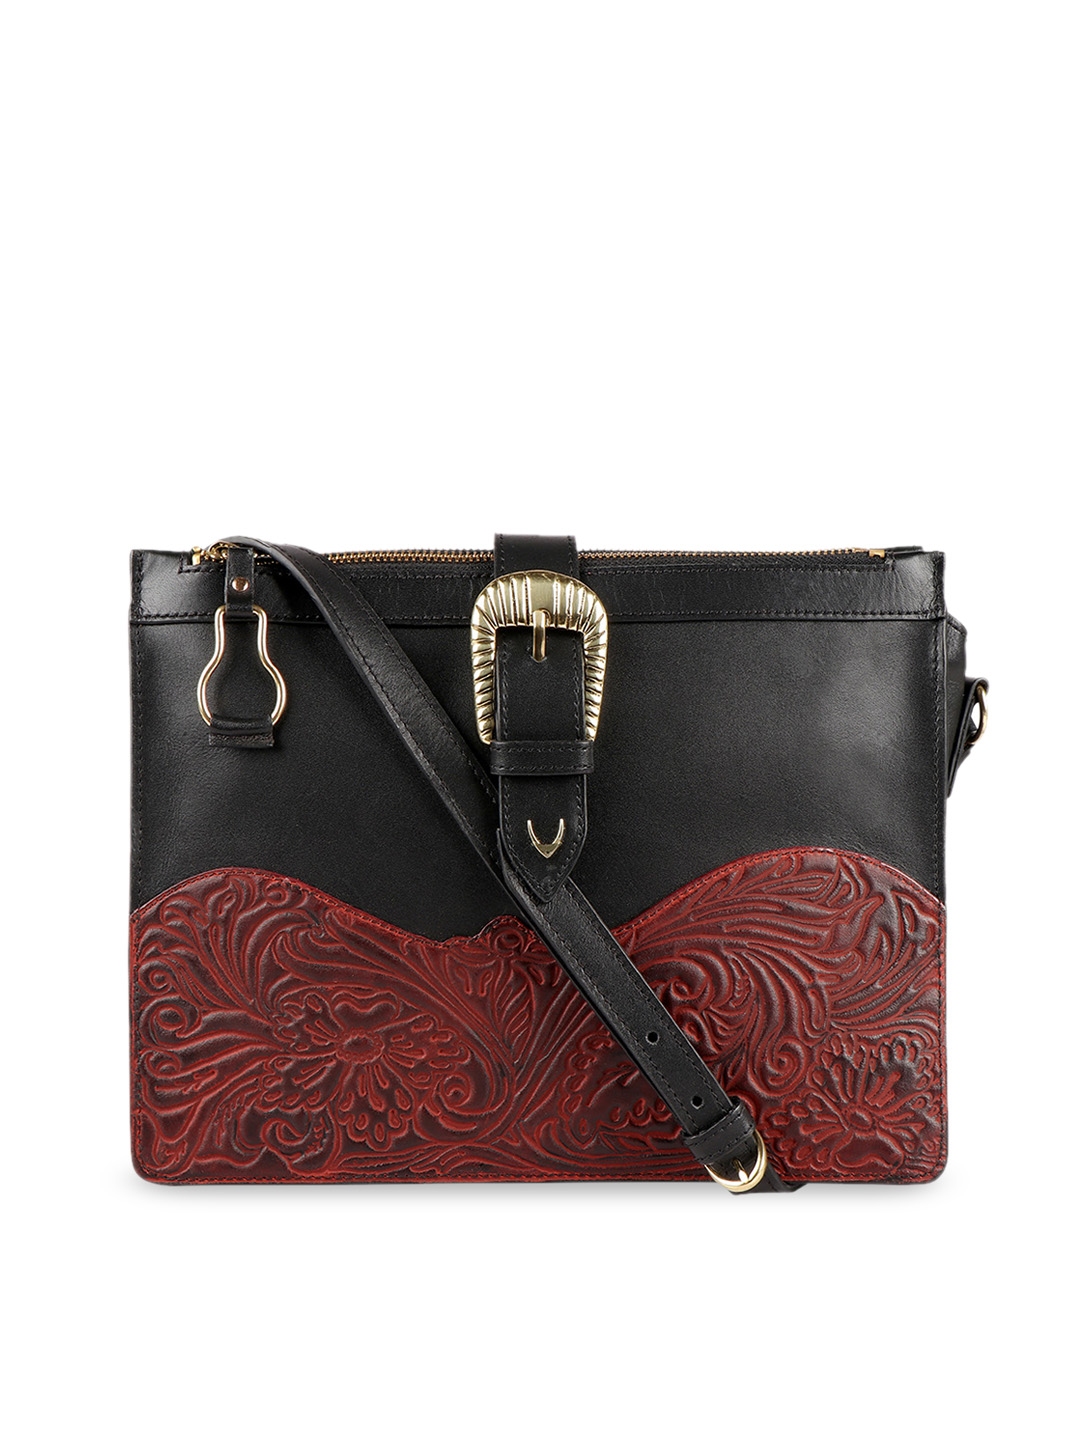 Hidesign Handbags - Buy Hidesign bags Online - Myntra